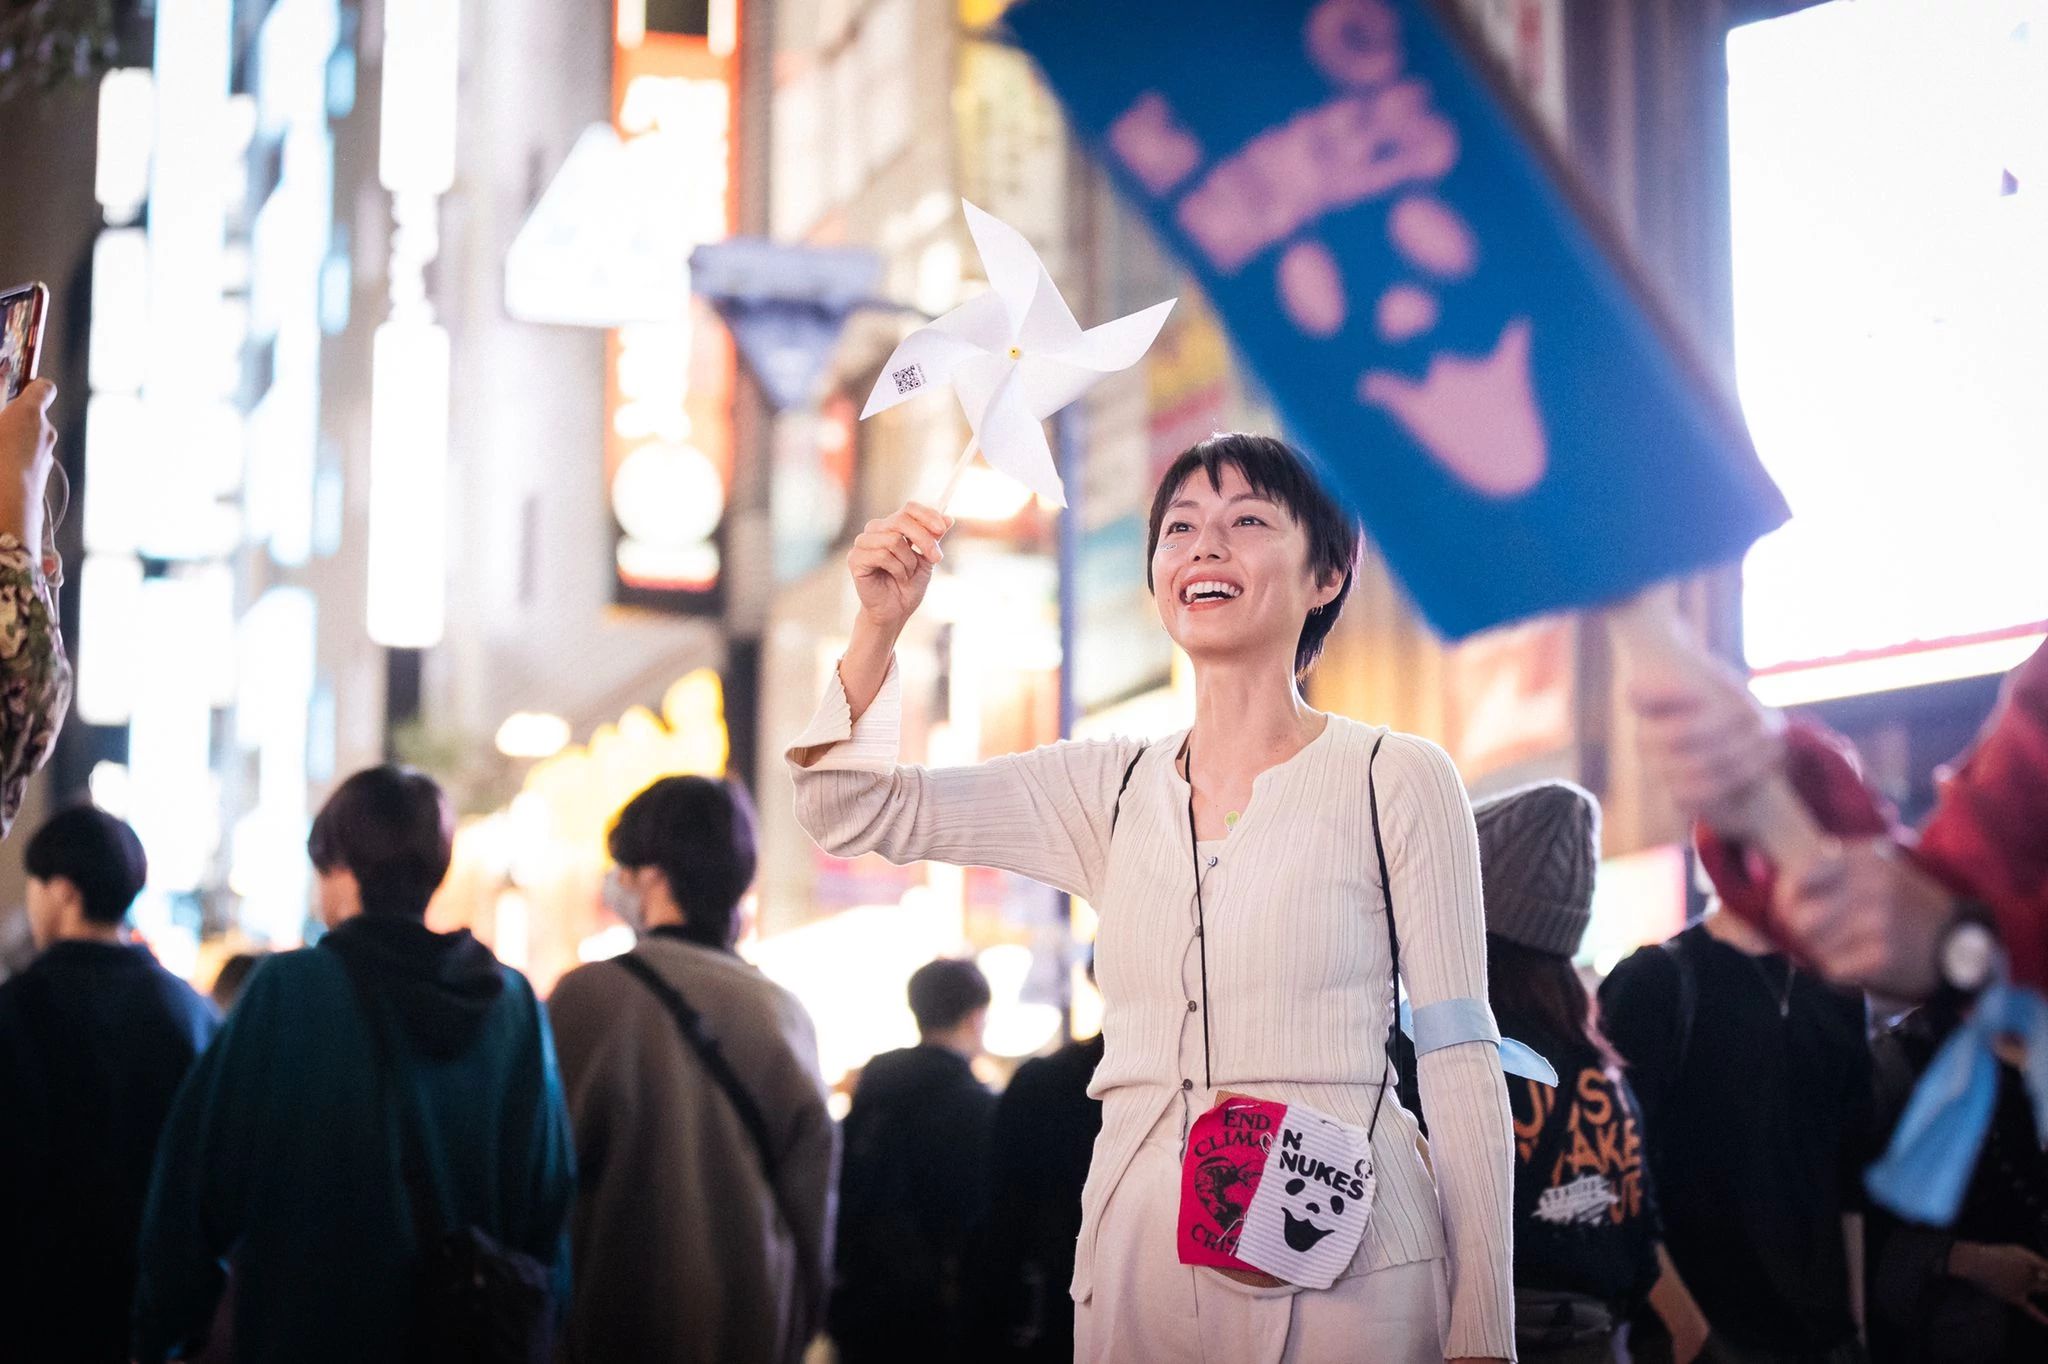 Tokyo, Japon, le 3 novembre : plus de 800 passionné·e·s se sont rassemblé·e·s à la gare de Shinjuku pour unir leurs voix dans un chant inspiré pour le climat qui a retenti au cœur de la ville. L’action a été organisée par 350 Japon en collaboration avec l’organisation We Want Our Future. Crédit photo : Jun Yokoyama